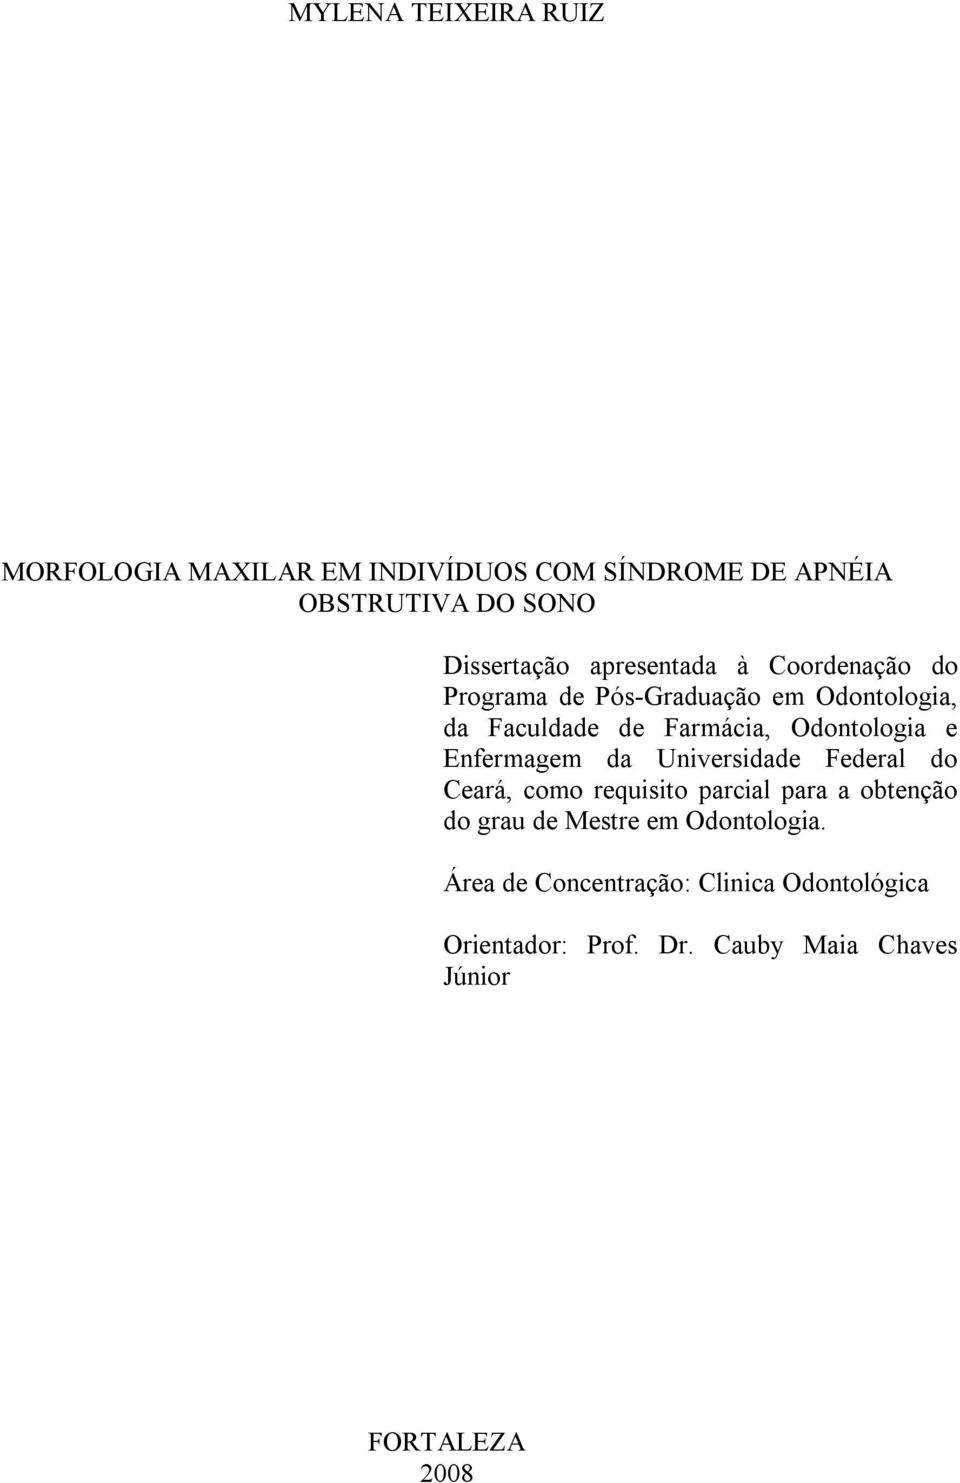 Enfermagem da Universidade Federal do Ceará, como requisito parcial para a obtenção do grau de Mestre em